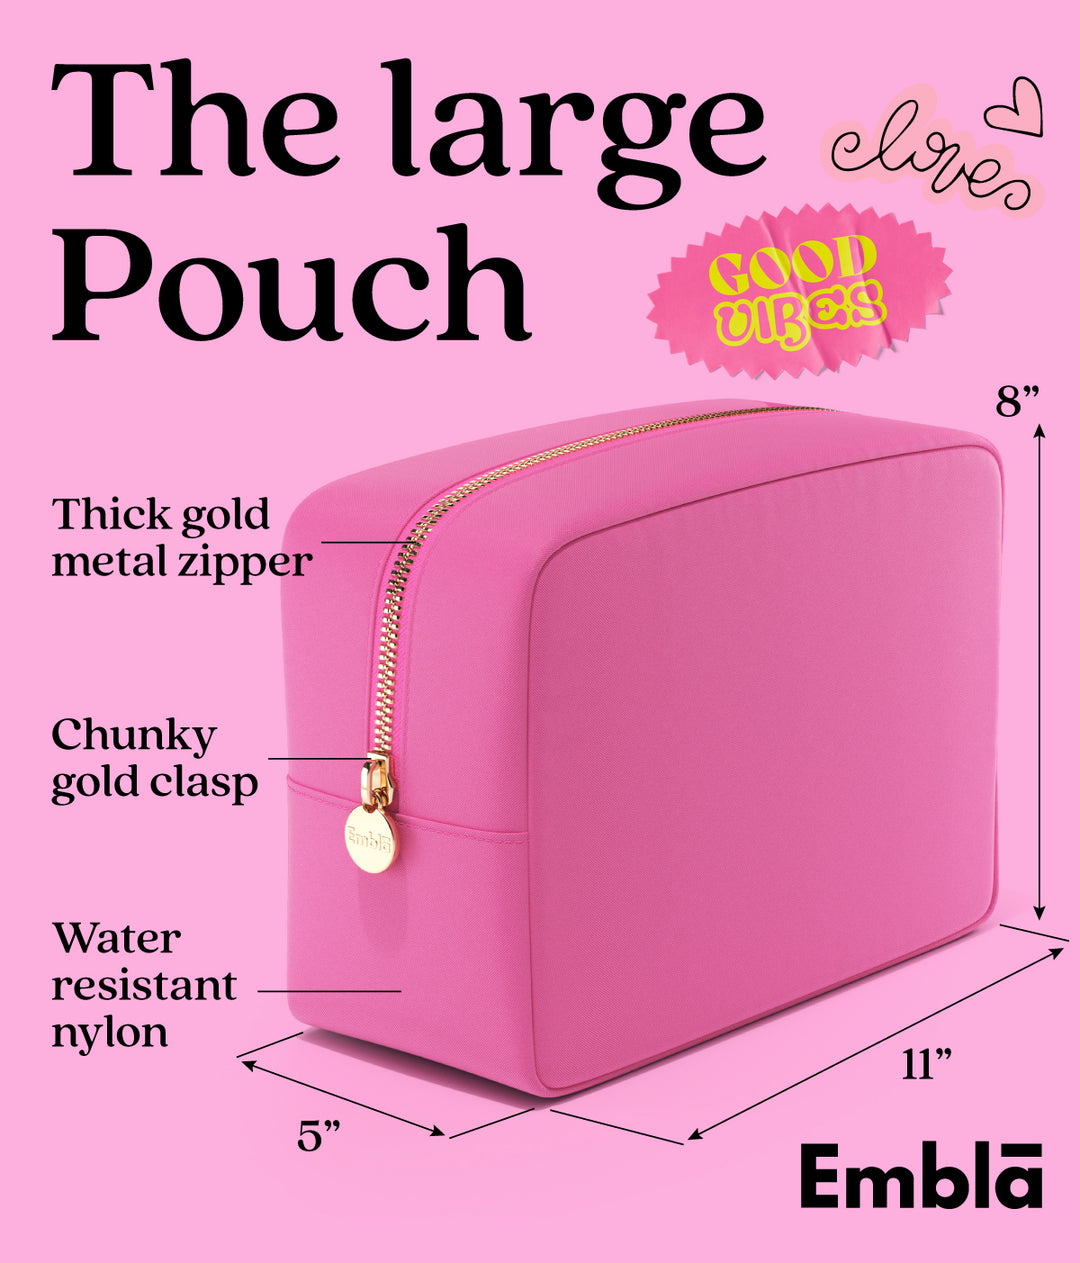 The Large Bubblegum Pouch